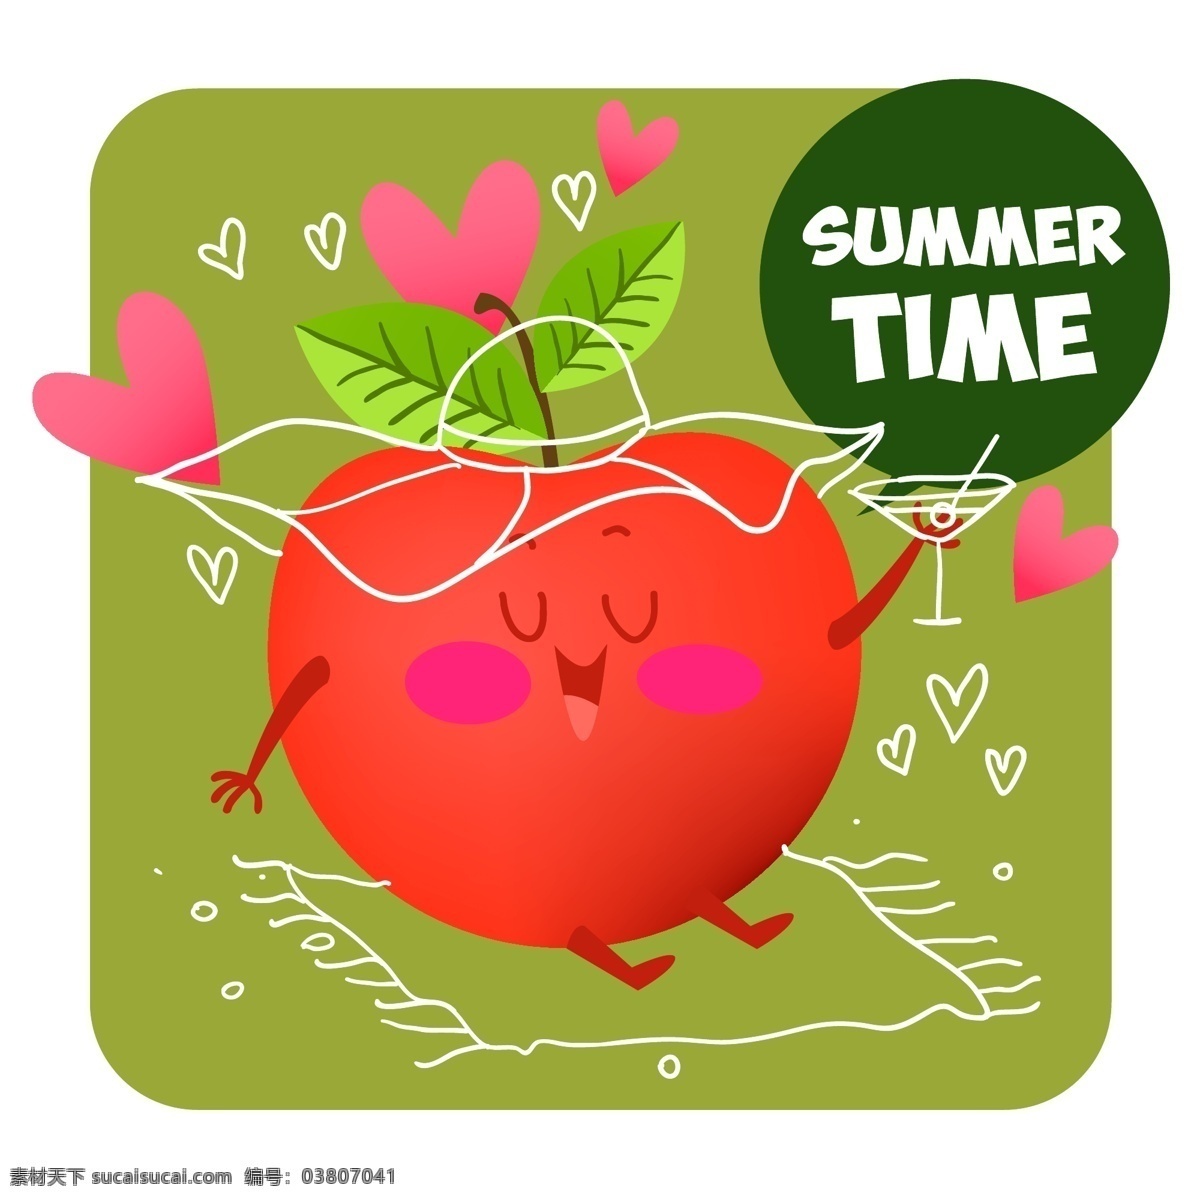 夏季 水果 背景 人物 海洋 海滩 太阳 印刷术 线条 字体 字母表 文本 假日 彩色 信件 苹果 假期